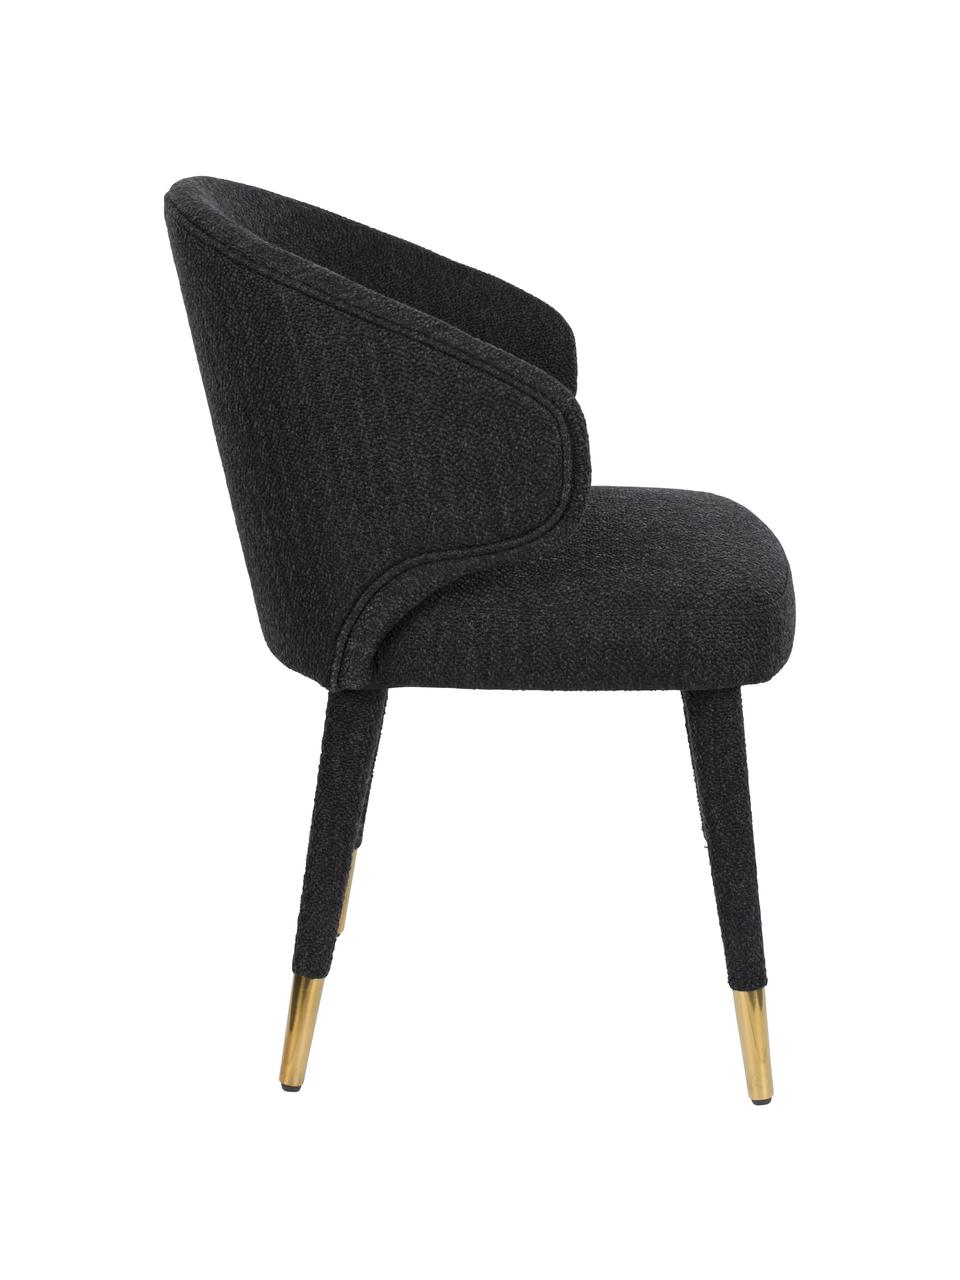 Gestoffeerde stoel Lunar in zwart, Bekleding: 100% polyester fluweel, Frame: multiplex, rubberhout, Poten: gepoedercoat metaal, Geweven stof zwart, 52 x 59 cm